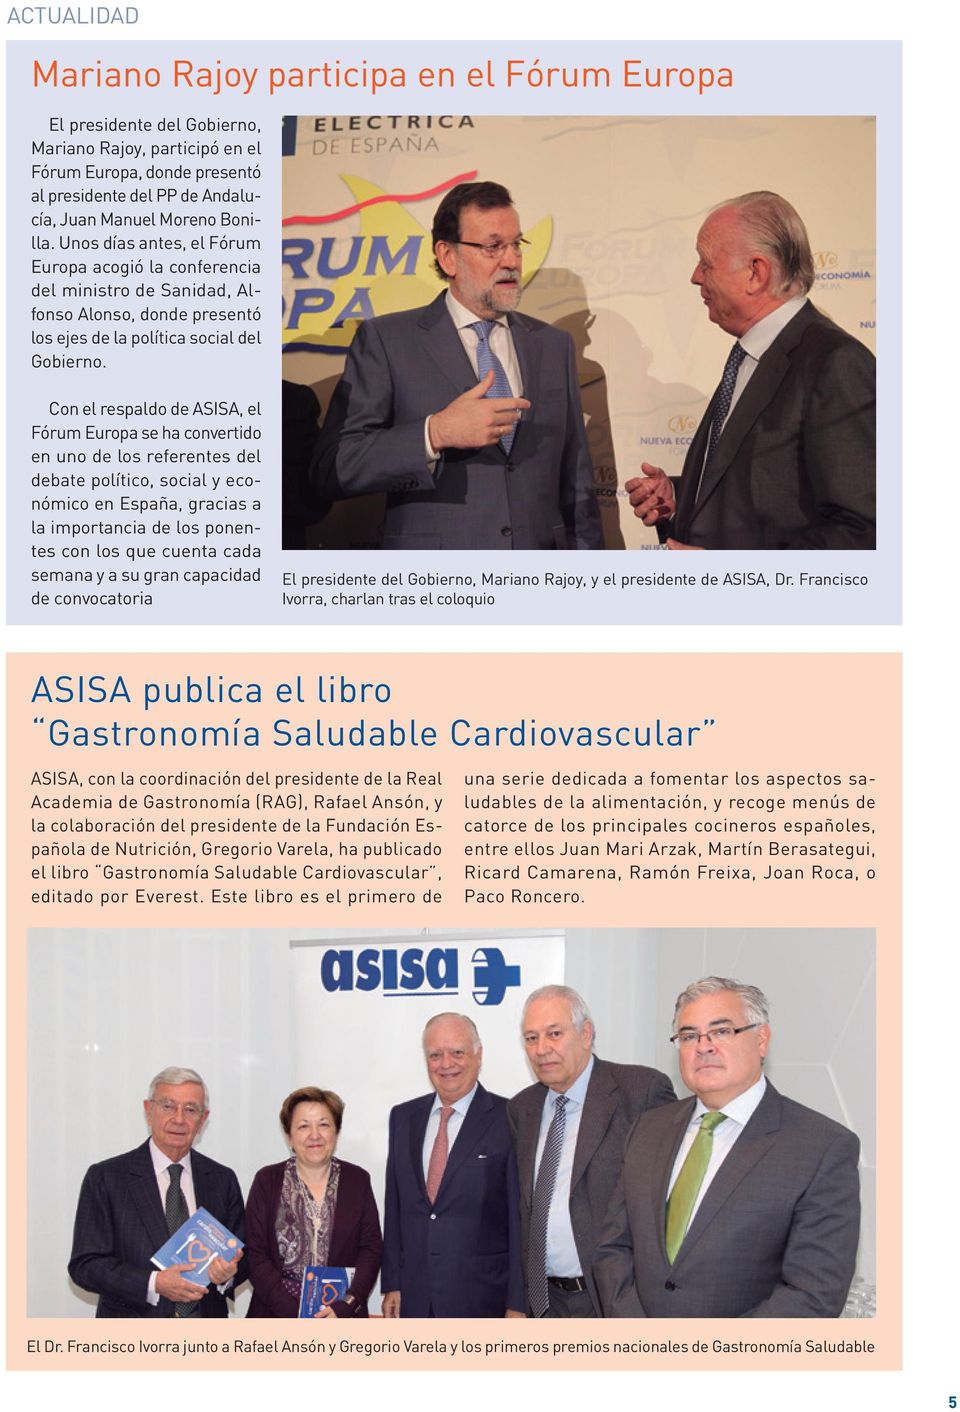 Con el respaldo de ASISA, el Fórum Europa se ha convertido en uno de los referentes del debate político, social y económico en España, gracias a la importancia de los ponentes con los que cuenta cada